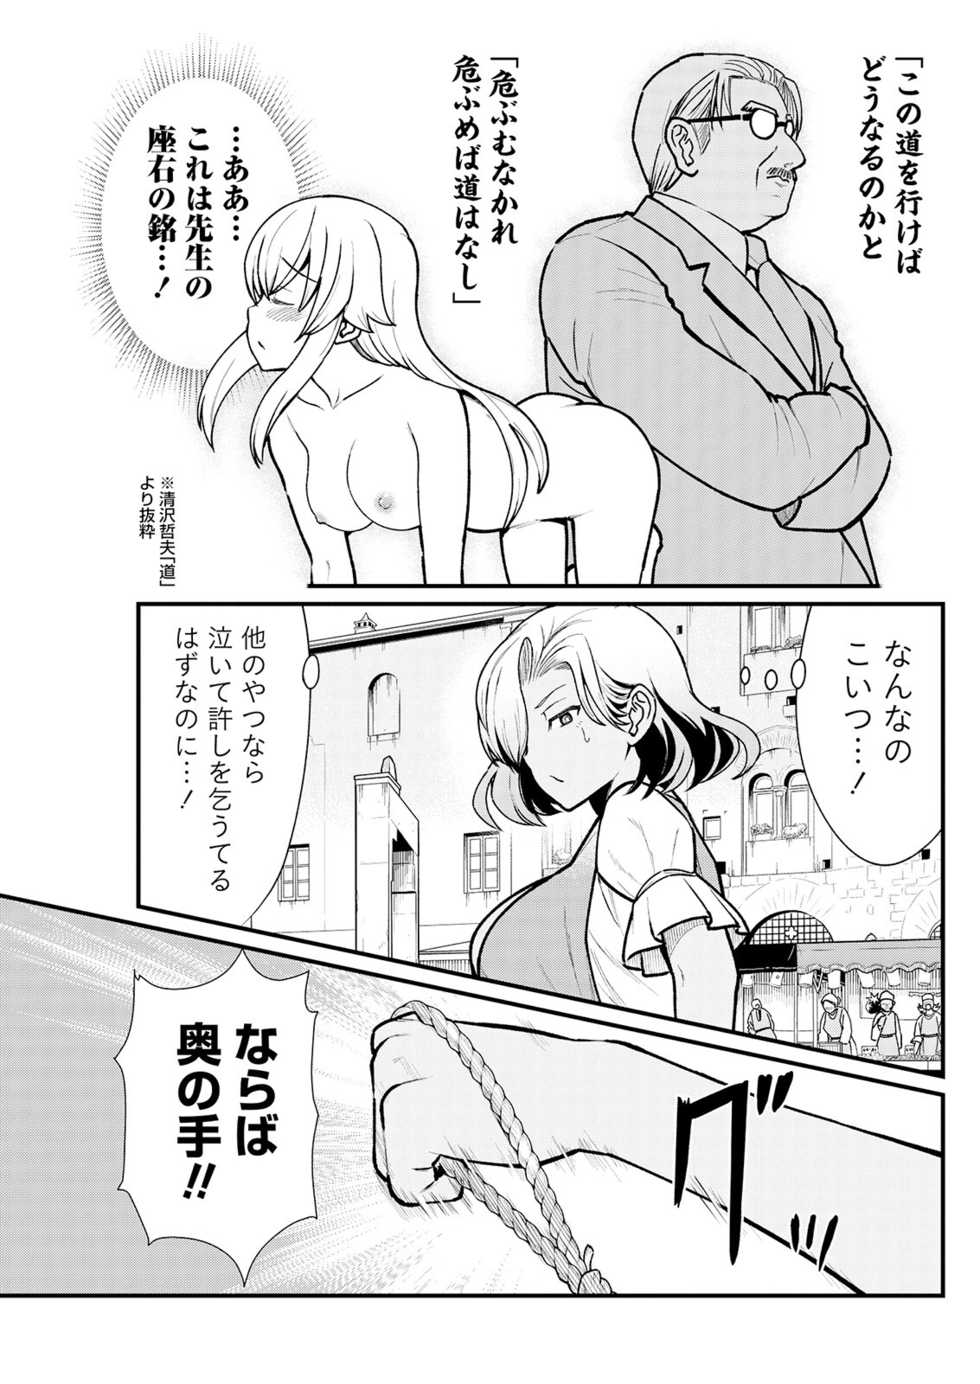 [Hinaki] Kukkorose no Himekishi to nari, Yuri Shoukan de Hataraku koto ni Narimashita. 3 - Page 13